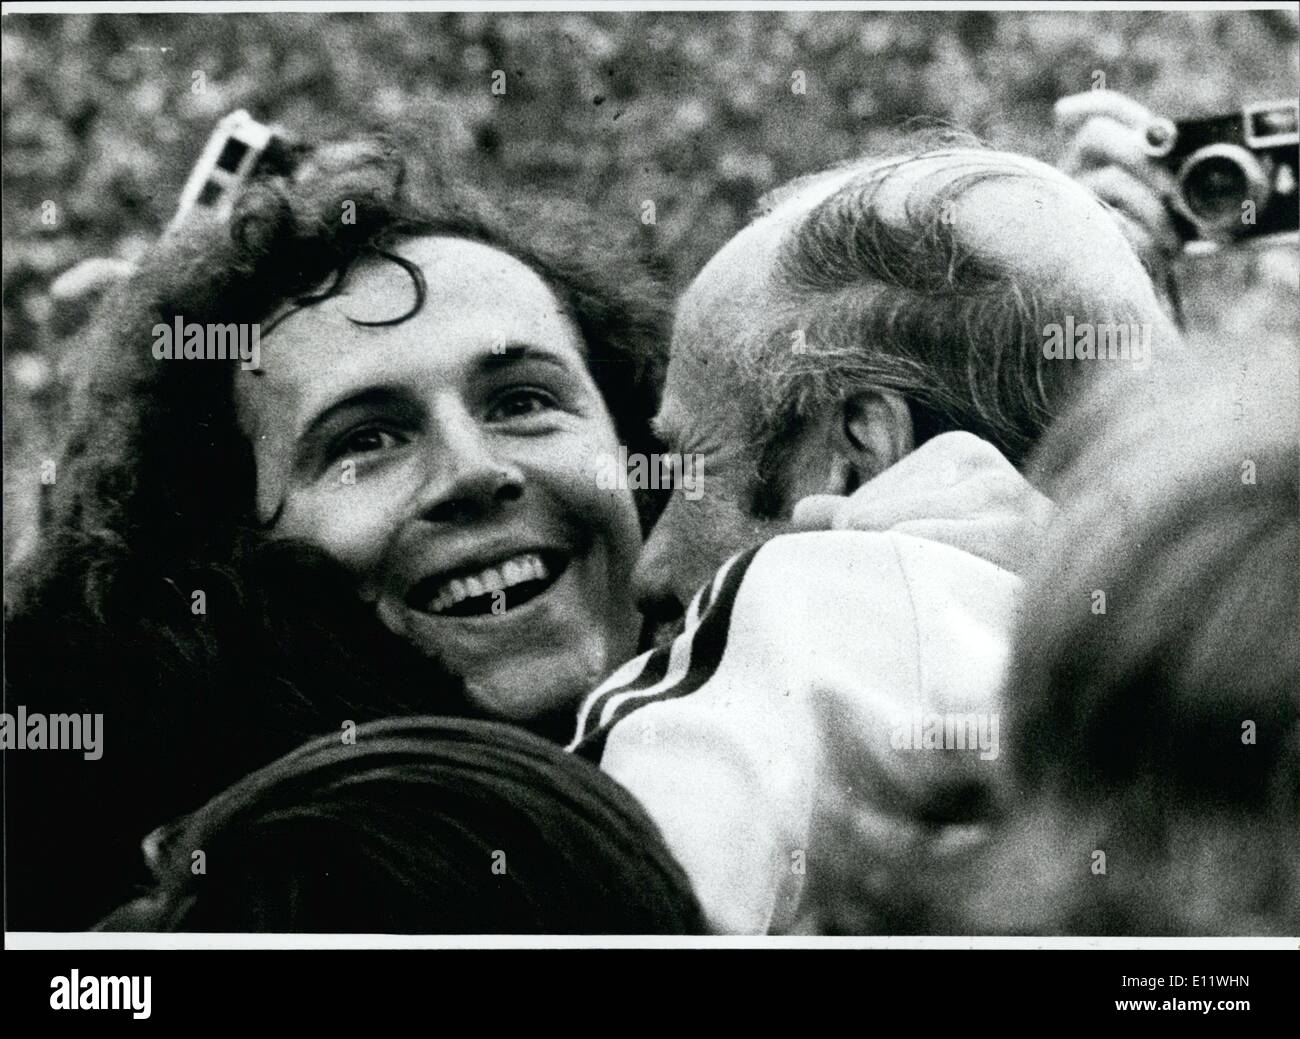 Septembre 09, 1980 - 65e anniversaire de l'Helumut Schow : Helmut Schon, ancien entraîneur de l'équipe nationale allemande de football, devient 65 ans sur Septembre 15th, 1980. Schon est né à Dresde, a joué dans l'équipe gagnante de ''Dresdener Sport Club', quand il eut dix-sept ans, et a eu tellement de succès, qu'il s'est vite a été nommé pour l'équipe nationale. Dans son premier match international le 21 novembre 1937 contre la Suède Schon a fait deux objectifs. Il a joué 16 fois pour l'équipe nationale et par cela, il a tourné 17 buts pour l'Allemagne Banque D'Images